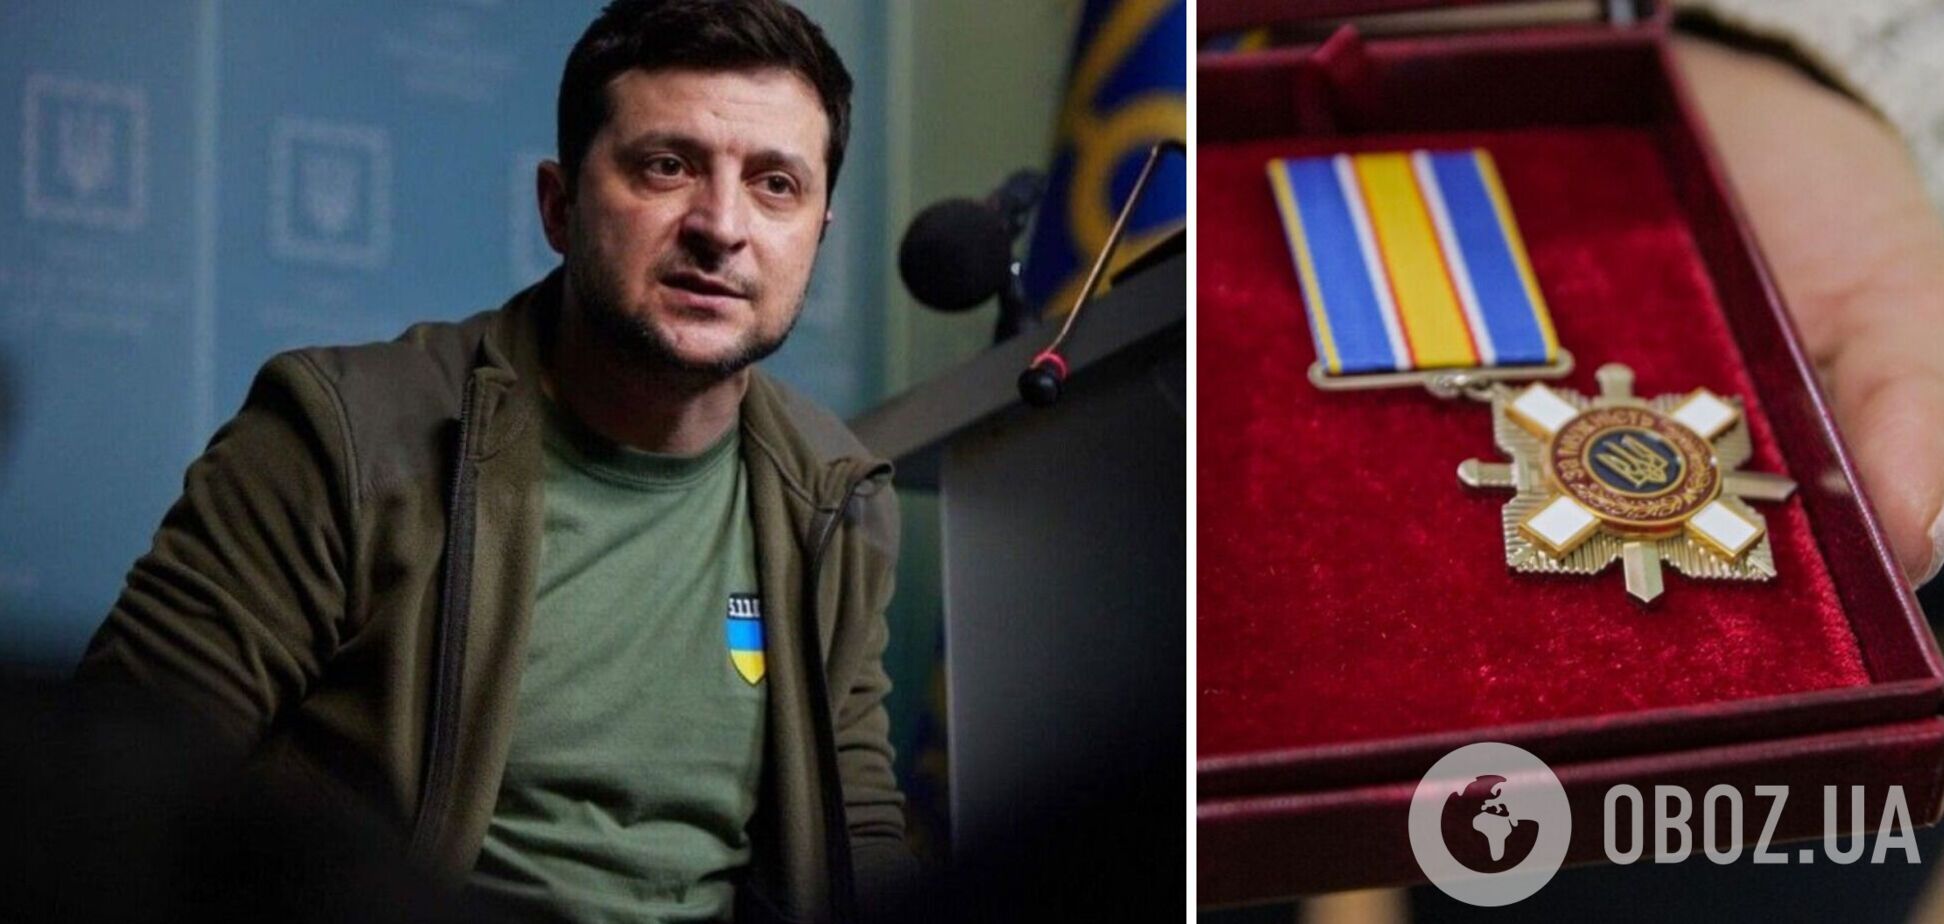 Зеленский отметил государственными наградами 126 военнослужащих ВСУ